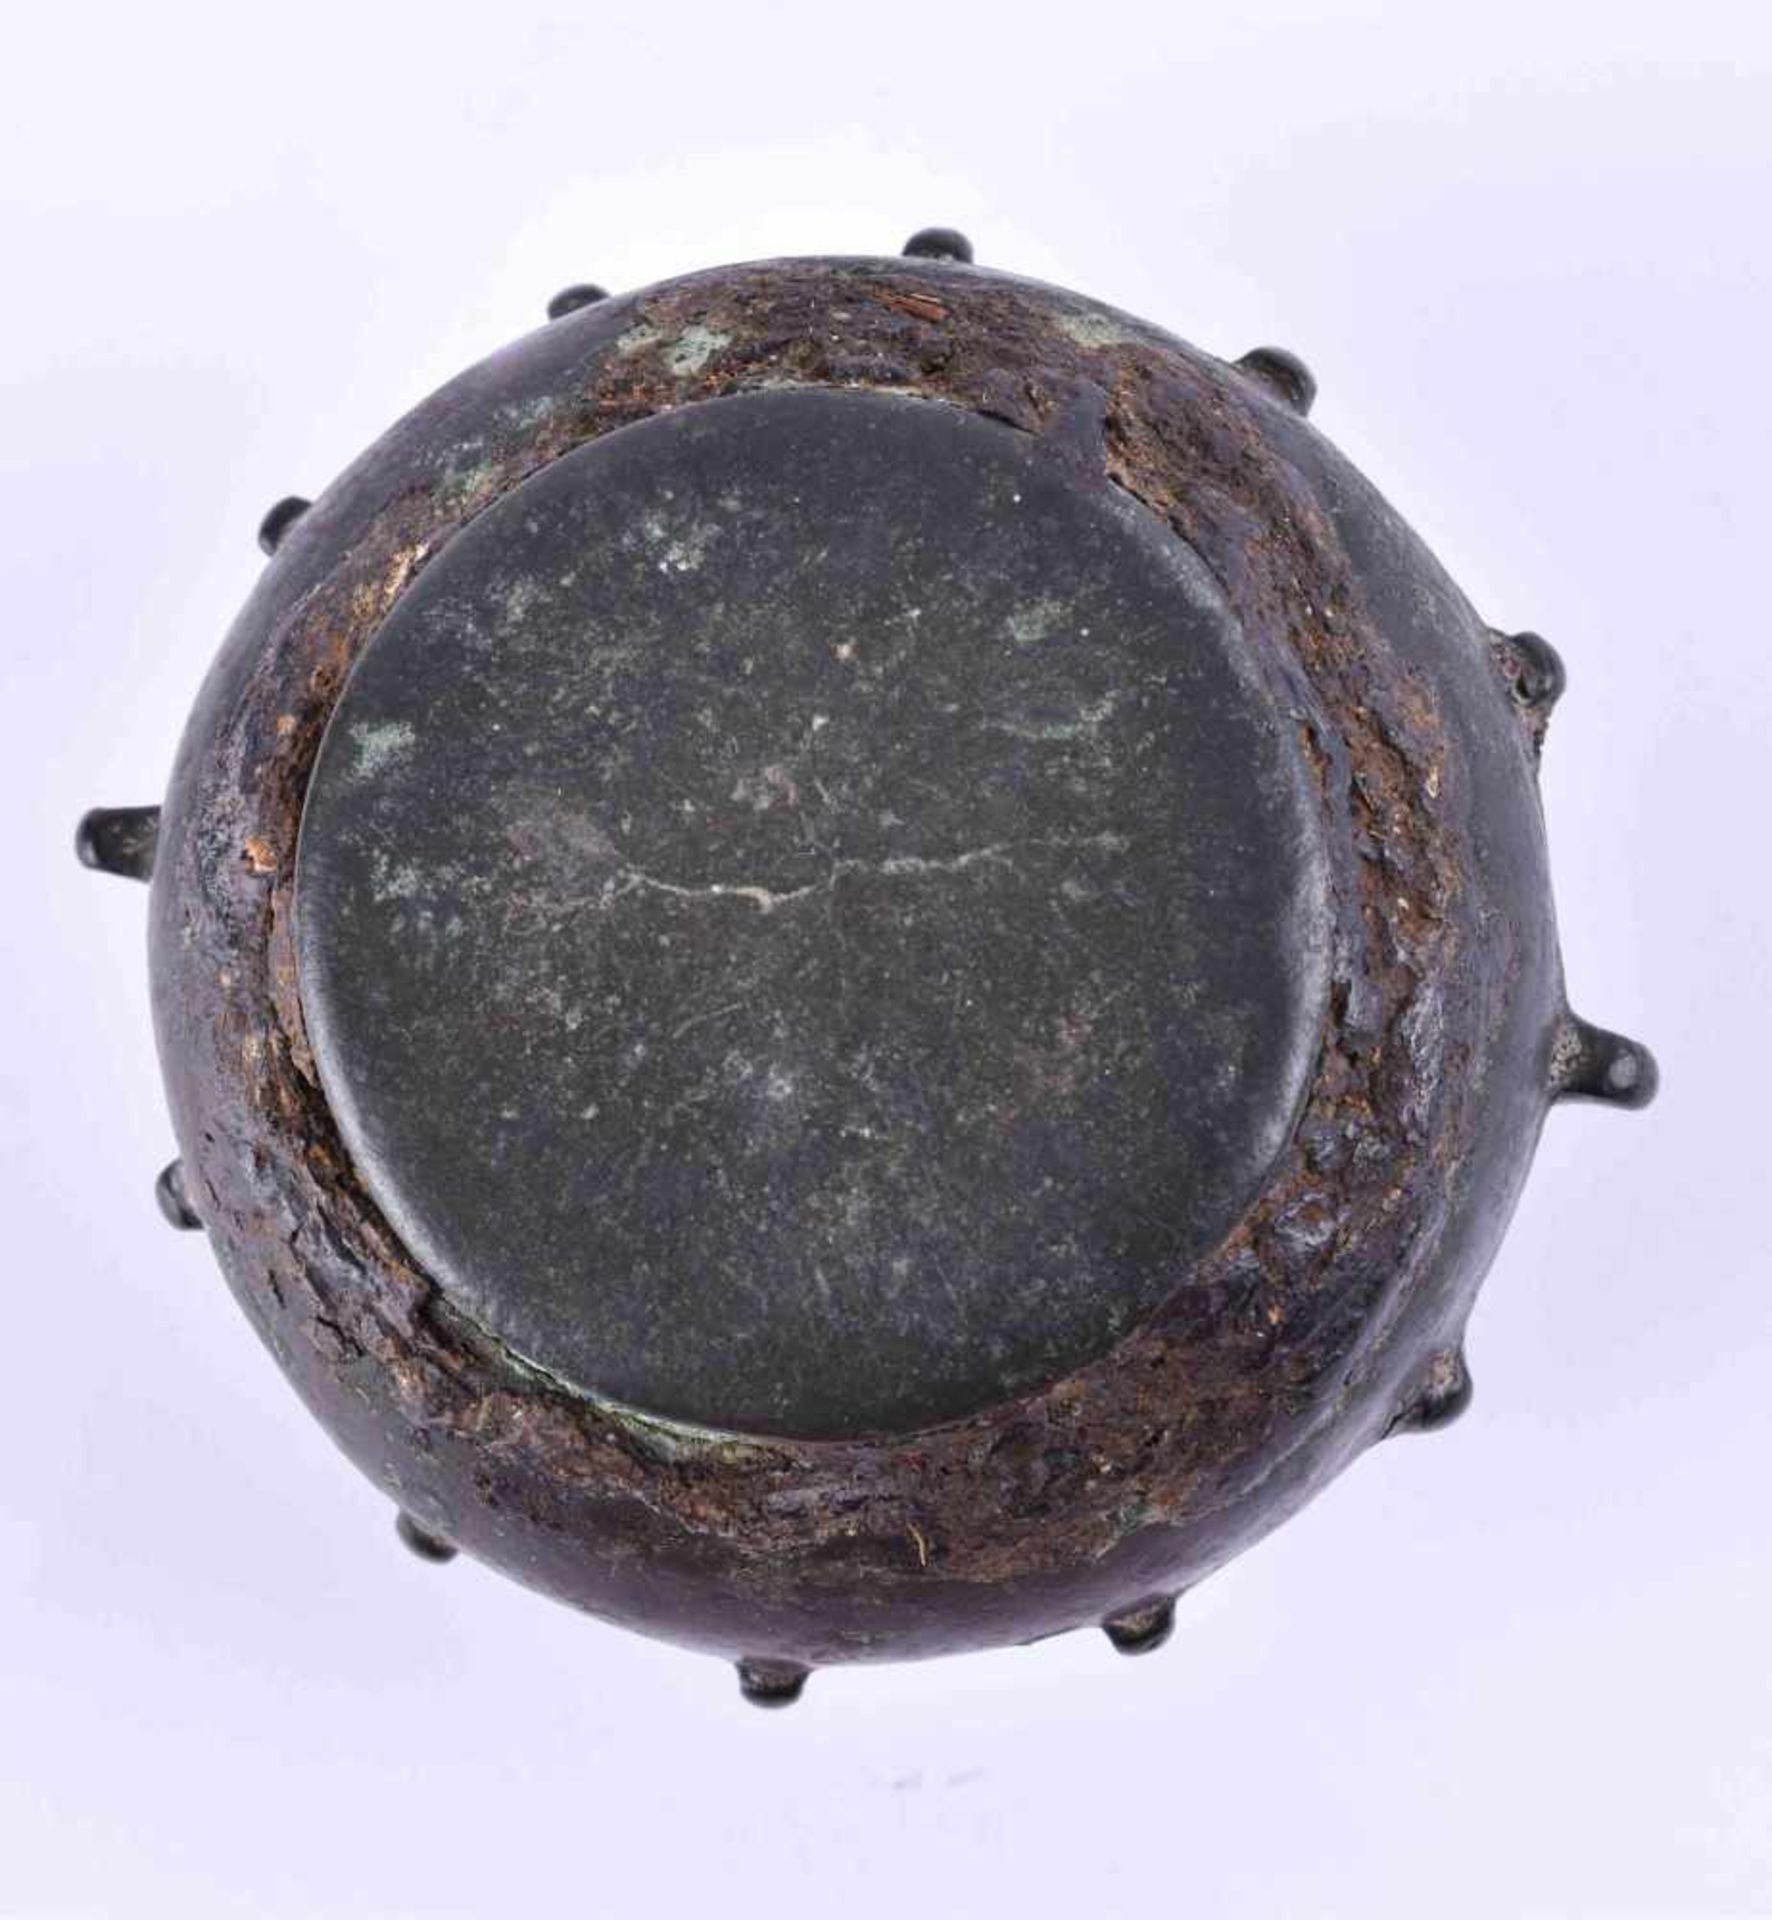 Maurisch-Spanischer Rippenmörser wohl 16. Jhd. oder älterBronze, H: ca. 7,5 cm, Ø ca. 10 cmMoorish- - Image 3 of 3